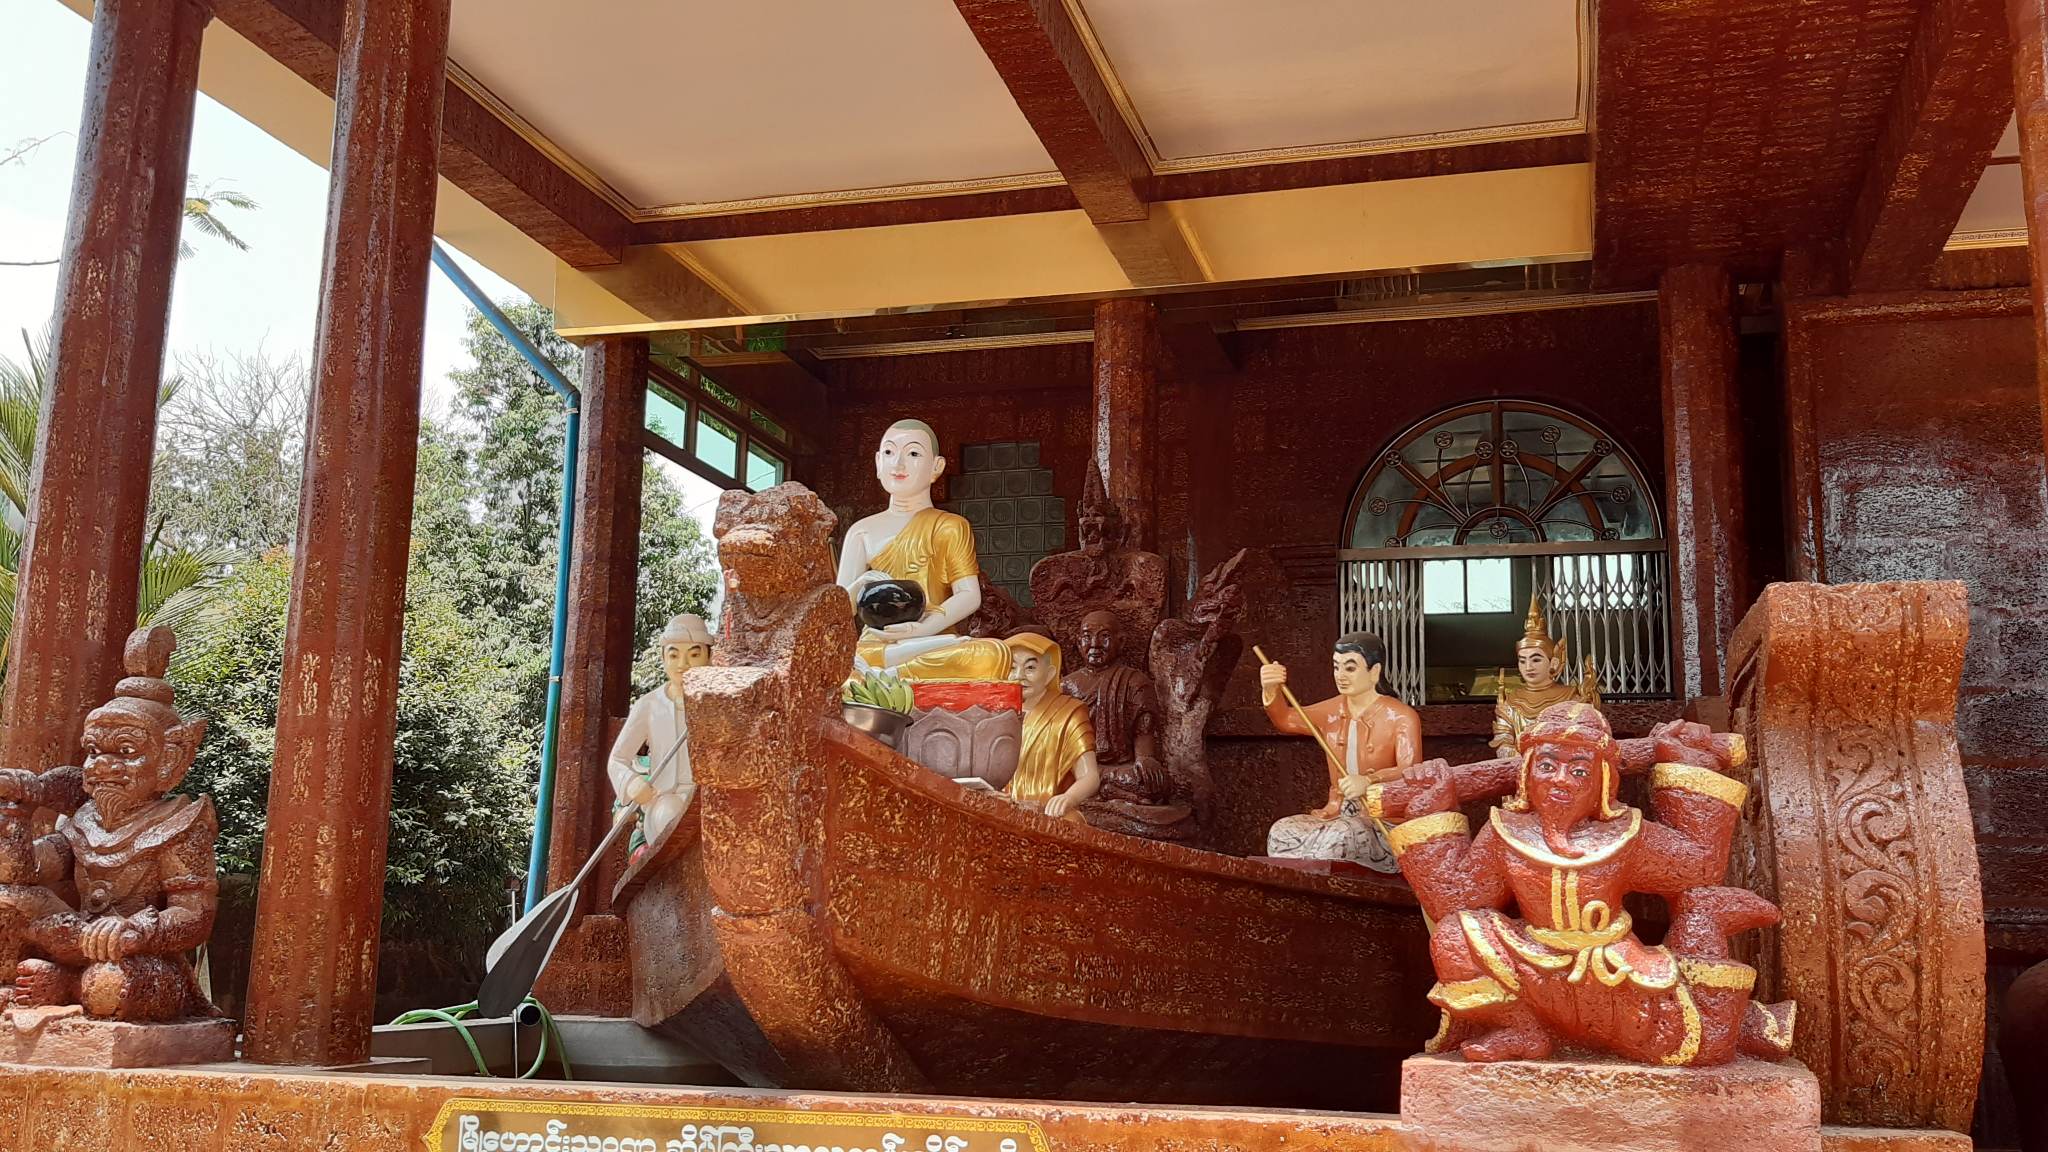 Kyaik Htee Saung Pagodaの内部4